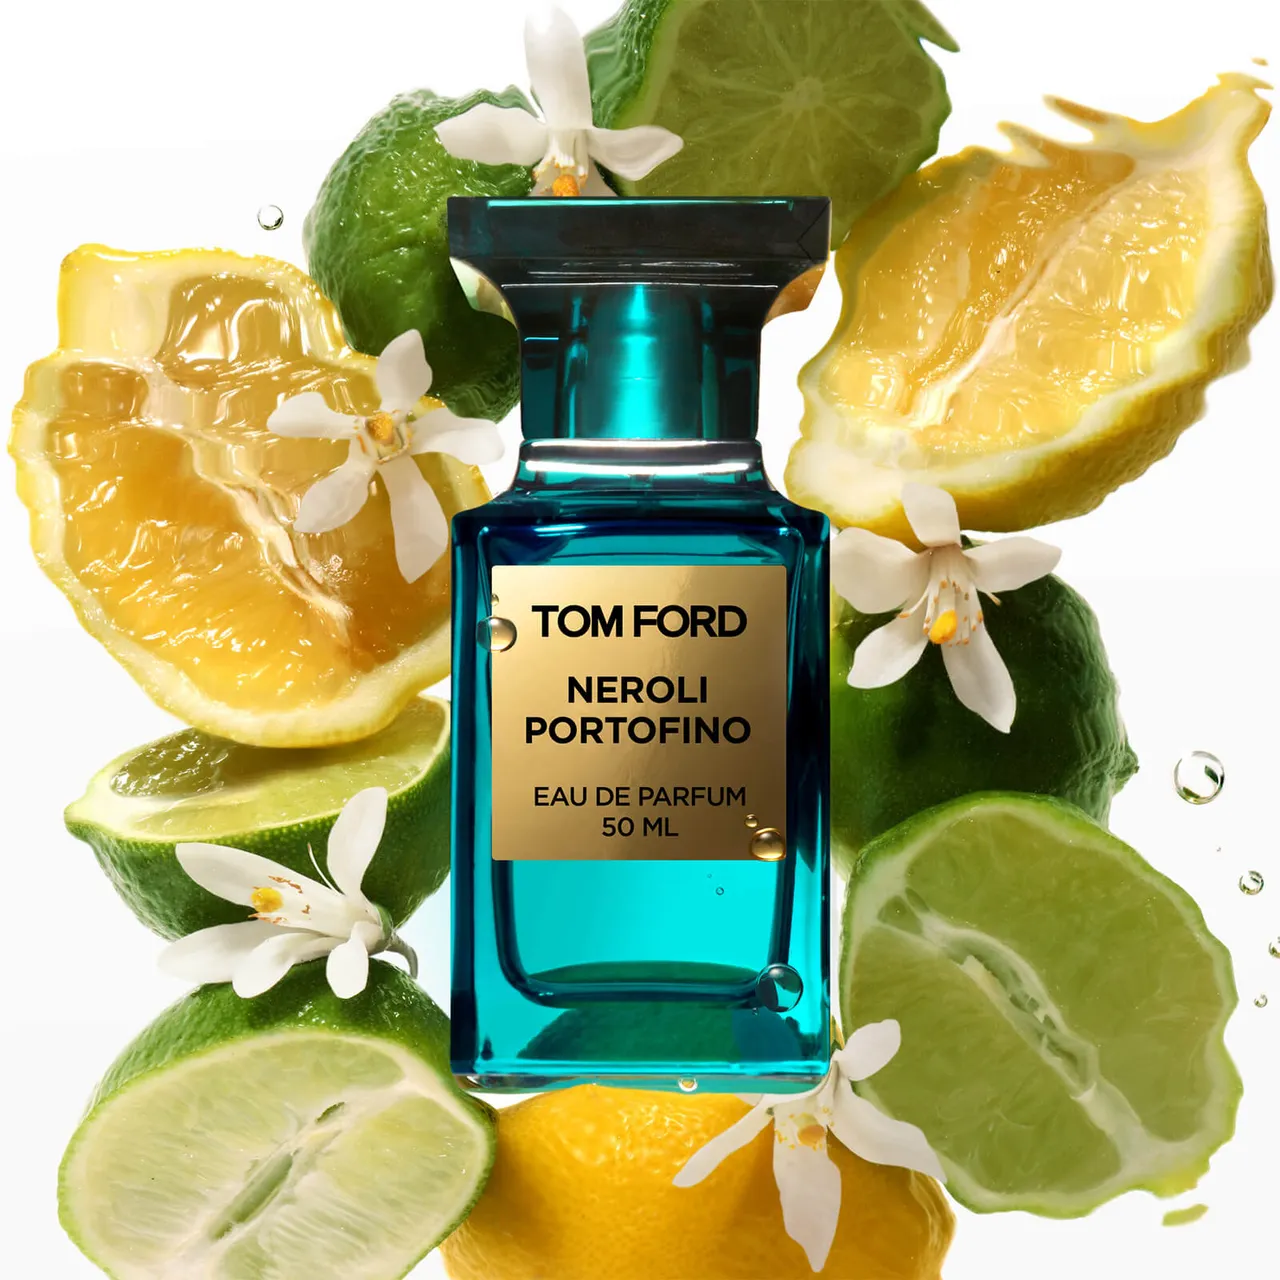 Tom Ford Neroli Portofino Eau de Parfum Spray - 50ml